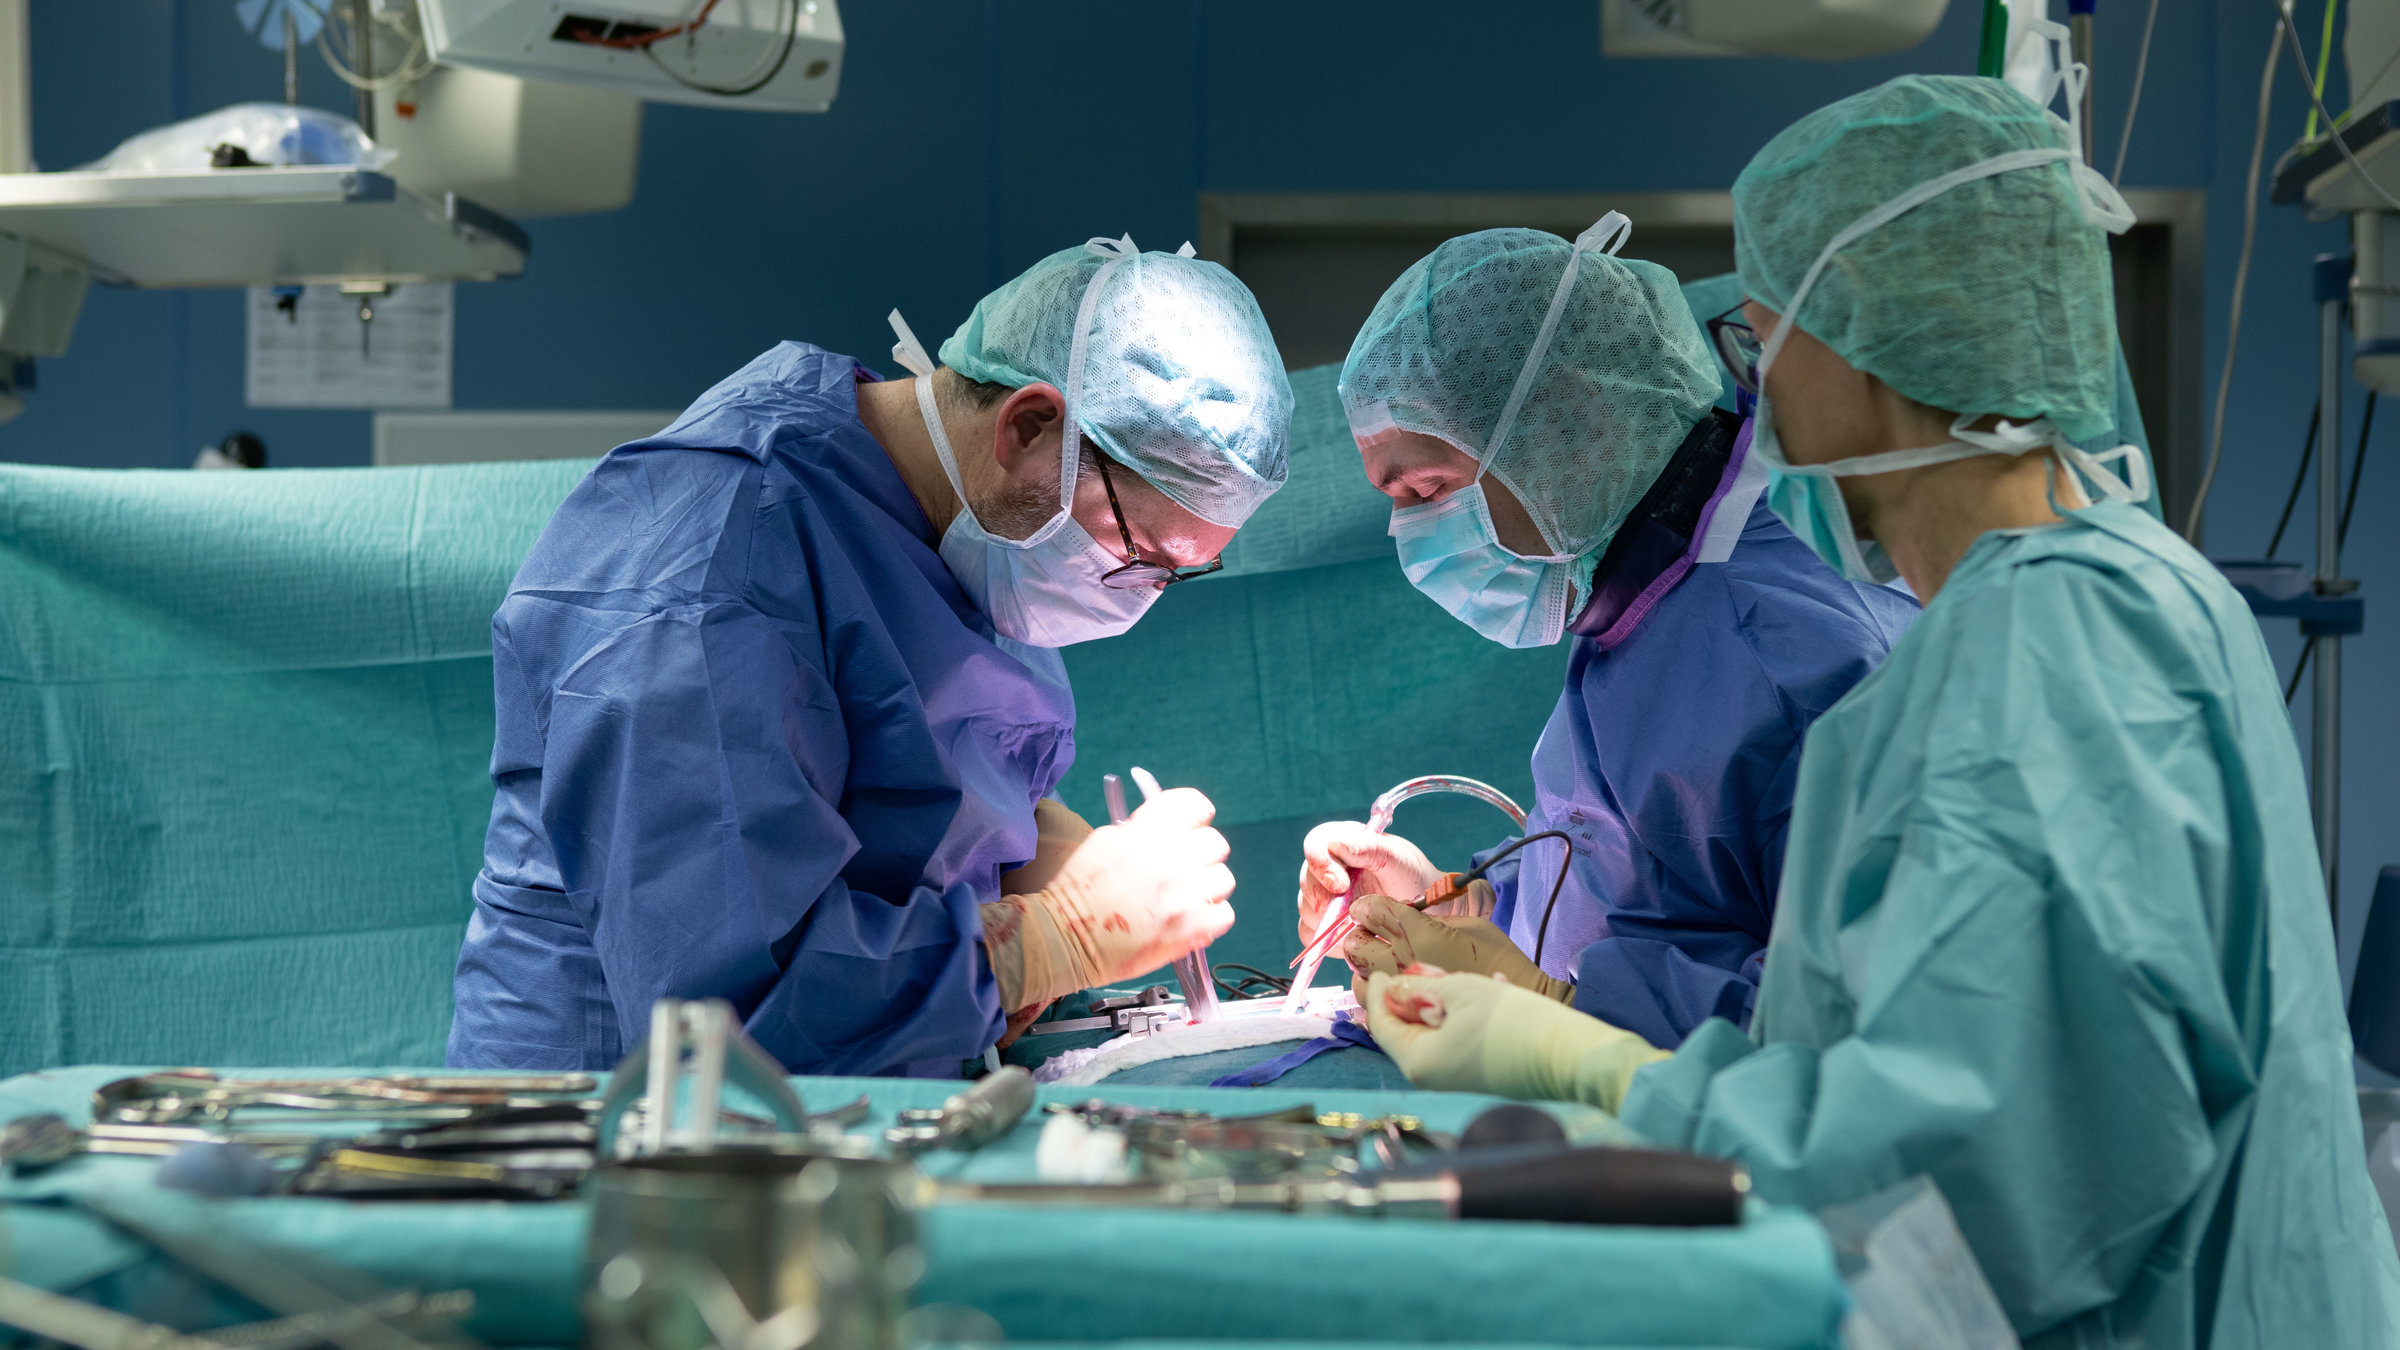 "plan b: Patientenwohl vor Profitstreben - Medizin im Sinne des Menschen":  Drei Menschen in OP-Kleidung operieren einen Patienten.